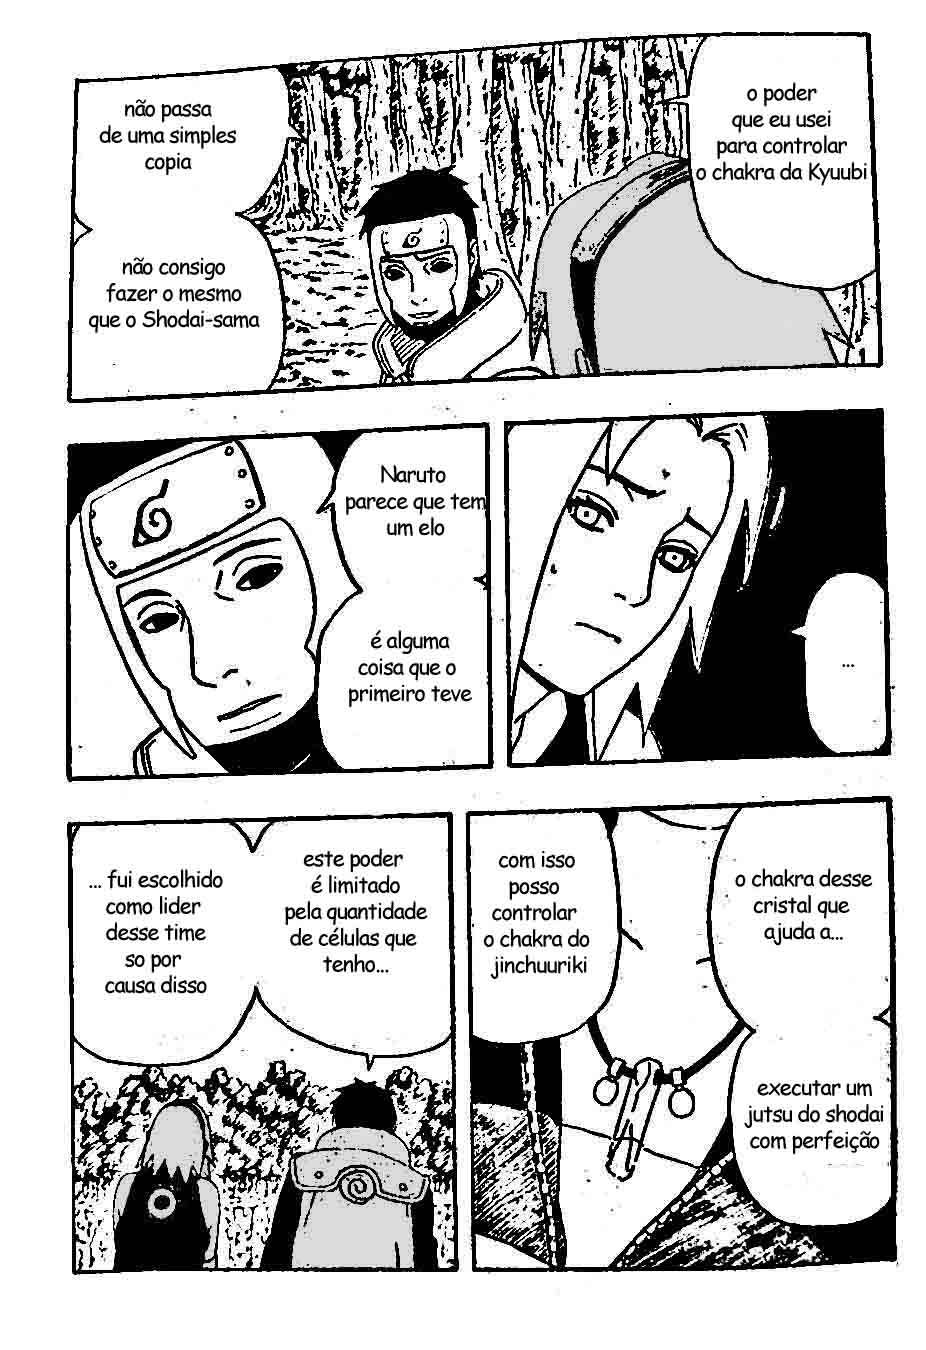 [Classificação] Níveis de poder em Naruto - Página 3 08